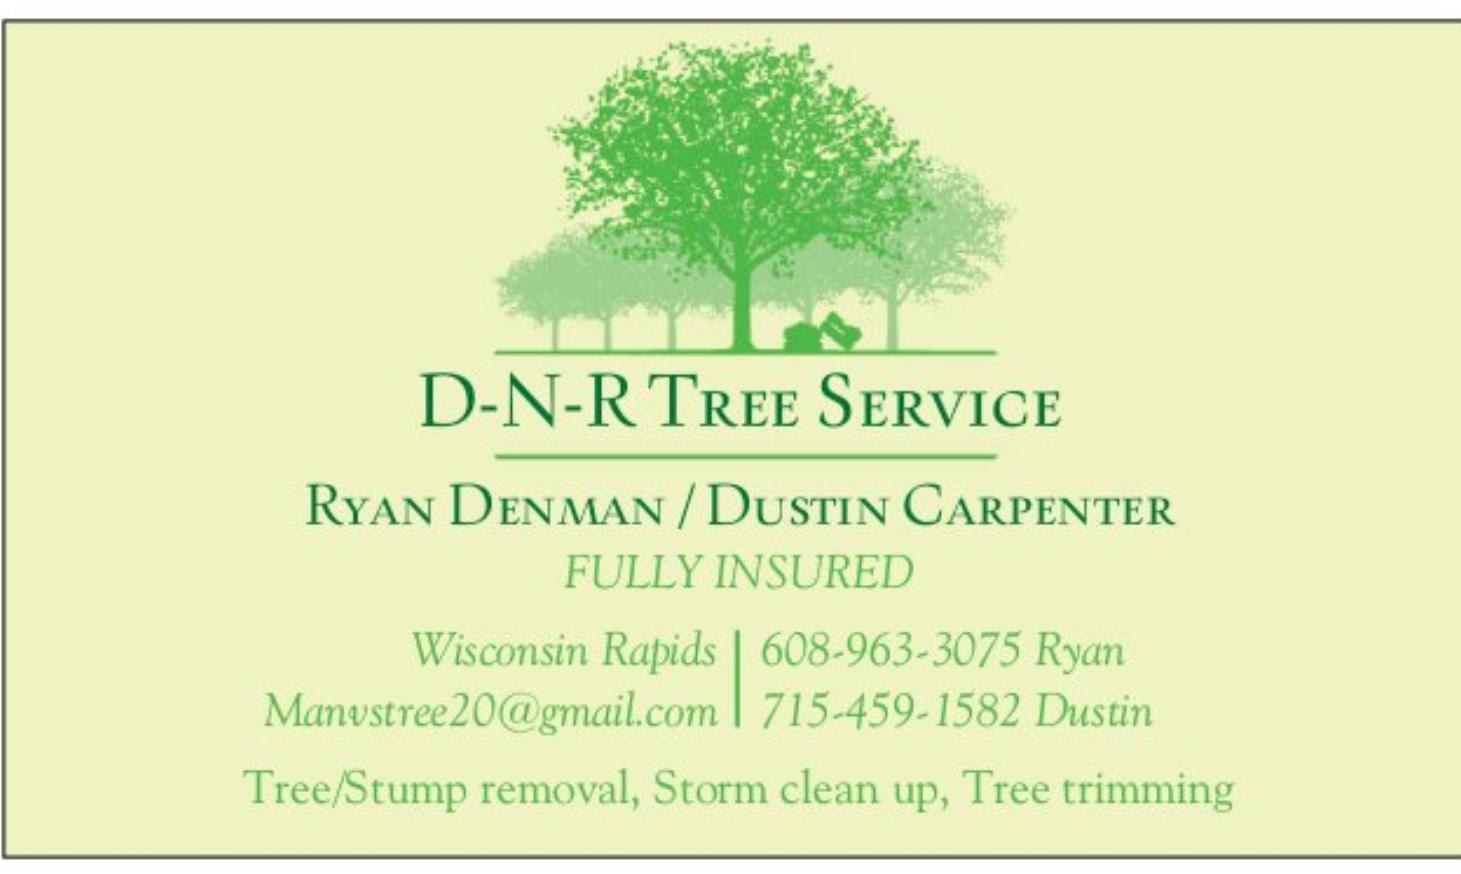 D-N-R Tree Service